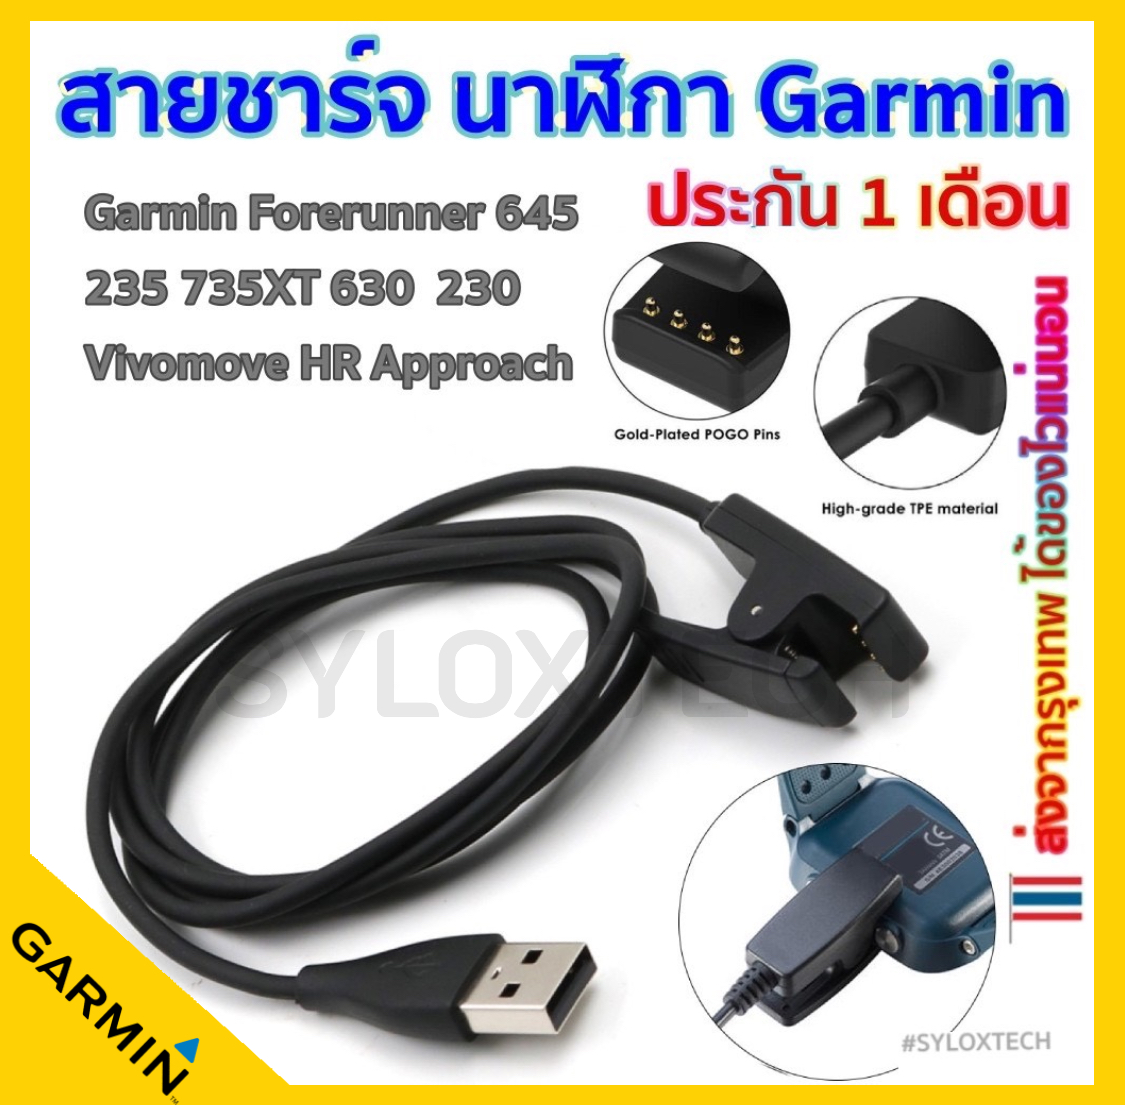 สายชาร์จ USB Charger Garmin Forerunner 645 / 235 / 230 / 630 / 735xt / Approach S20 S60 / 35 / Vivomove hr Charging cable สินค้าเทียบ ที่ชาร์จแบต